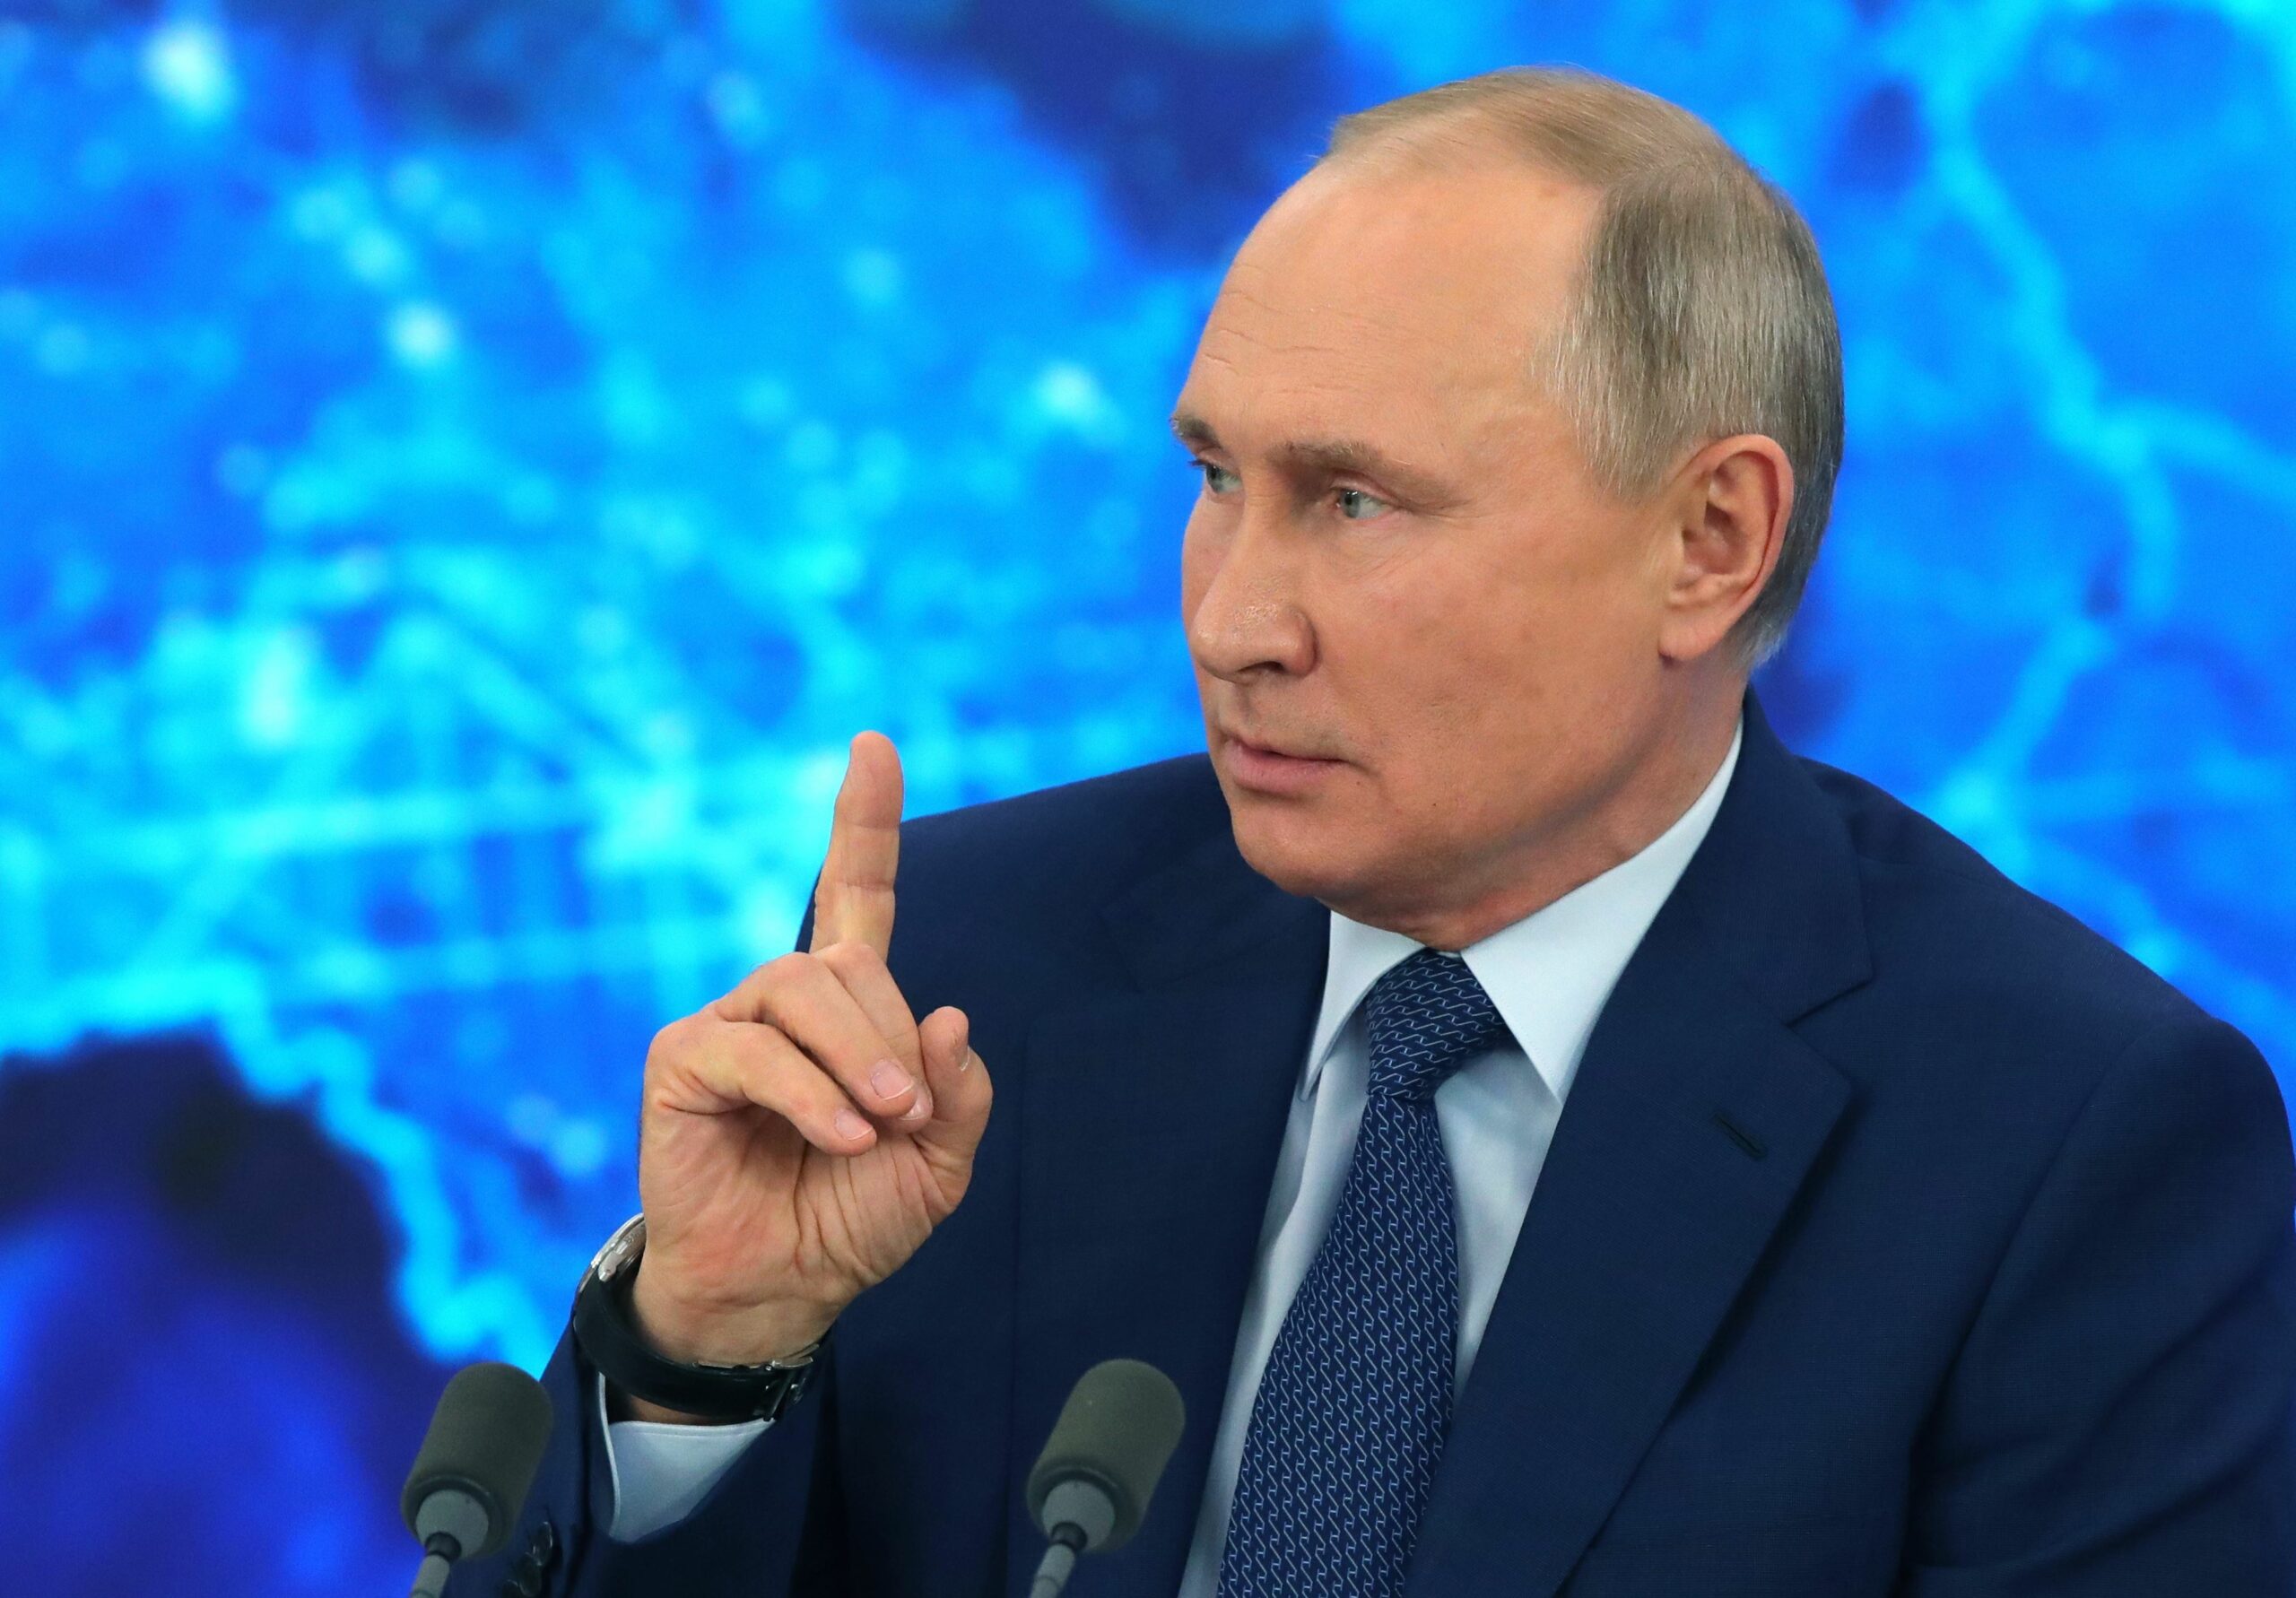 بوتين لشولتس: الحوار مشروط بتلبية مطالب روسيا